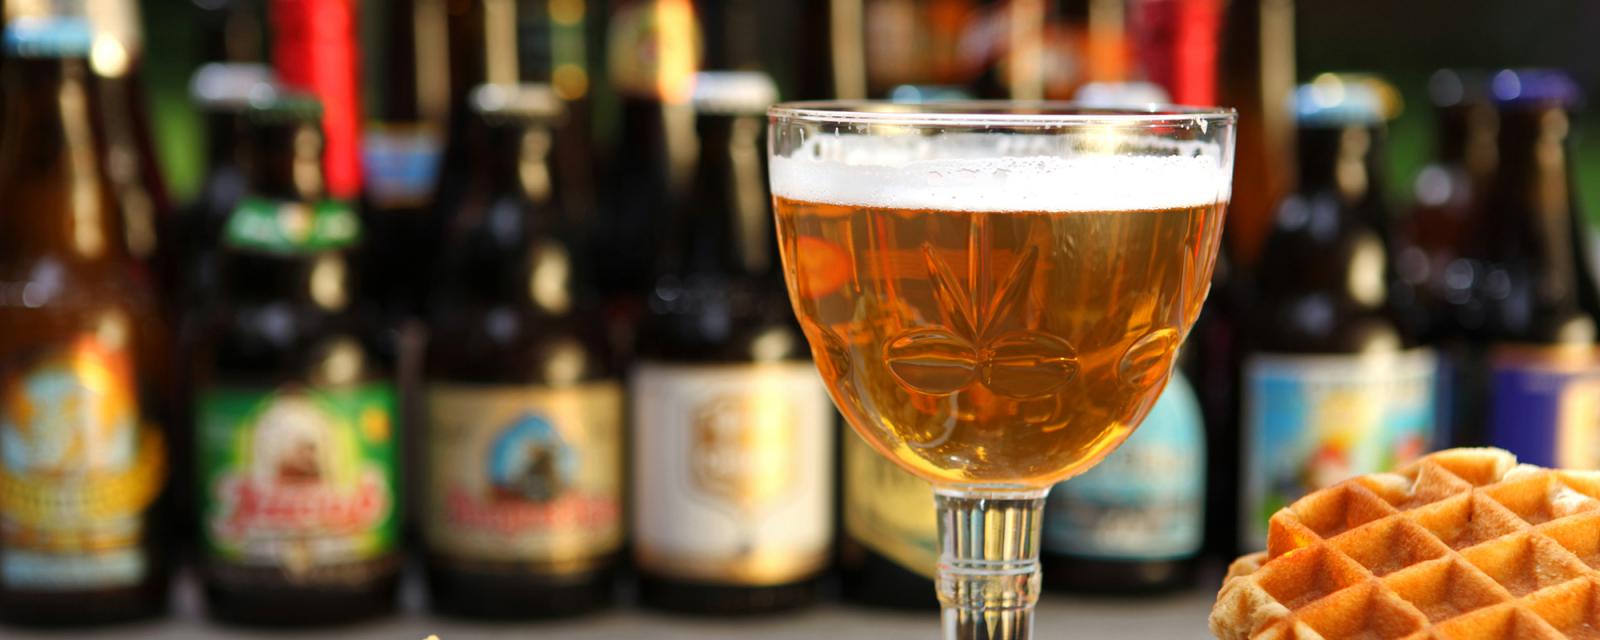 5 steden in België die bierliefhebbers niet mogen missen 